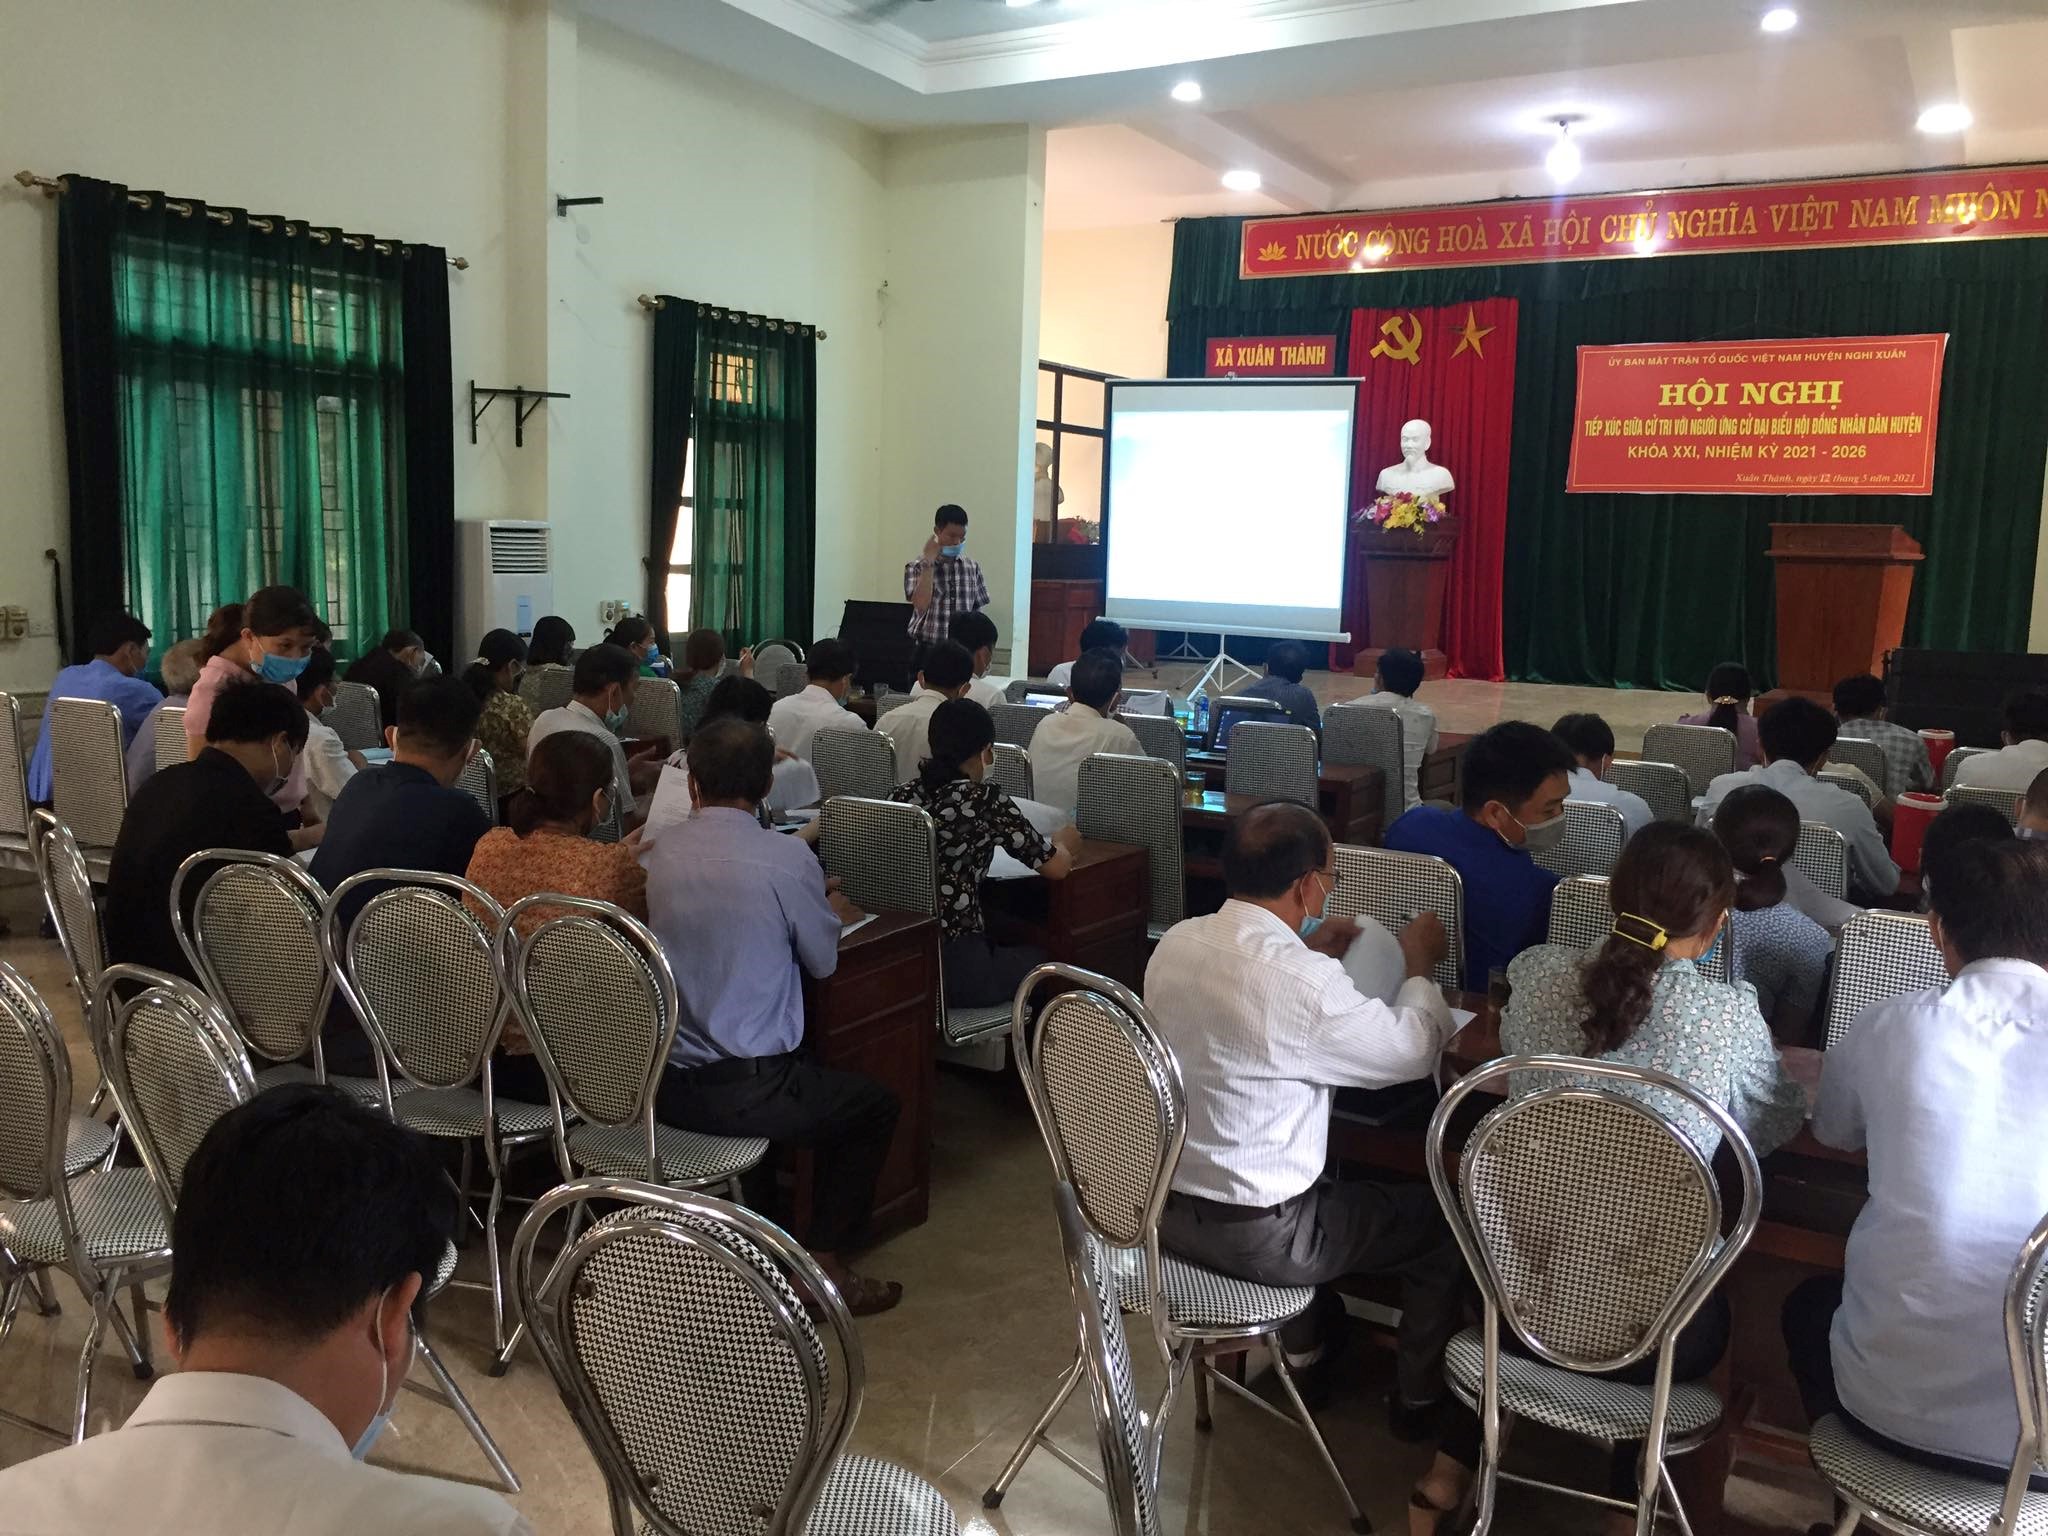 Huyện Nghi Xuân: Tập huấn hướng dẫn sử dụng dịch vụ công trực tuyến mức độ 3, 4 cho người dân và doanh nghiệp